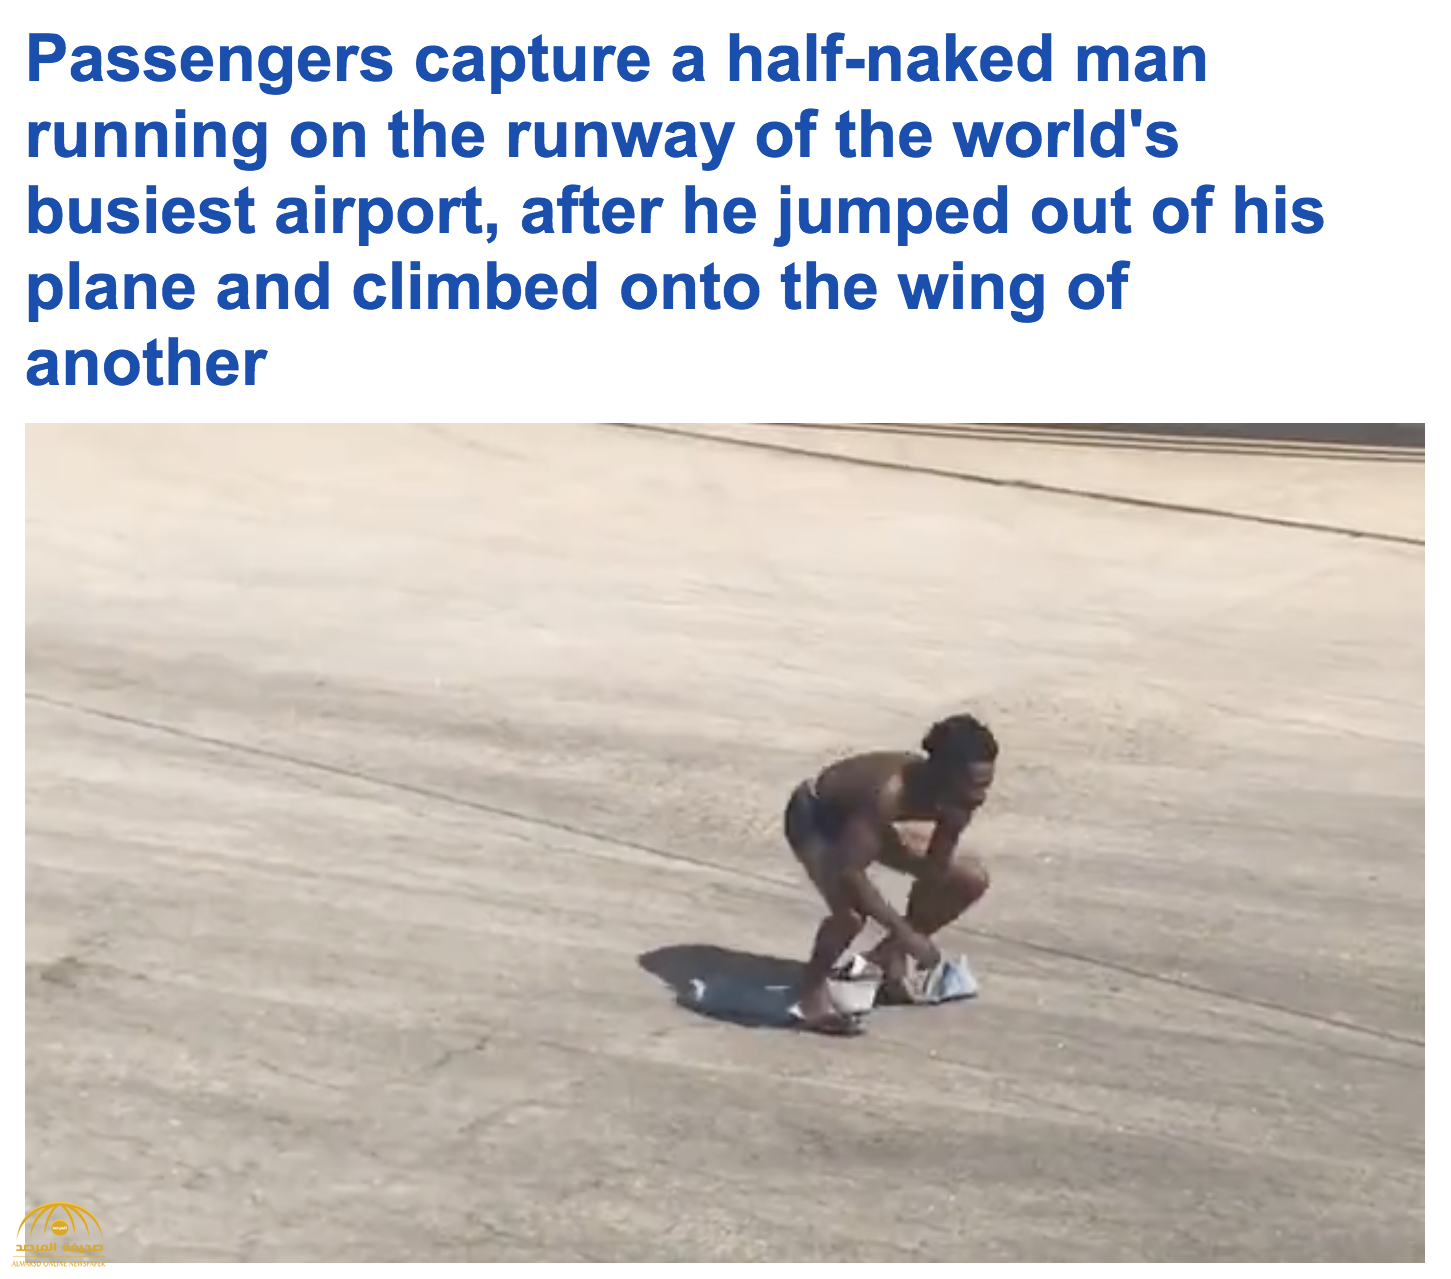 شاهد:  رجل عاري يعتلي جناح طائرة بمطار أمريكي.. ويثير الرعب بين الركاب!